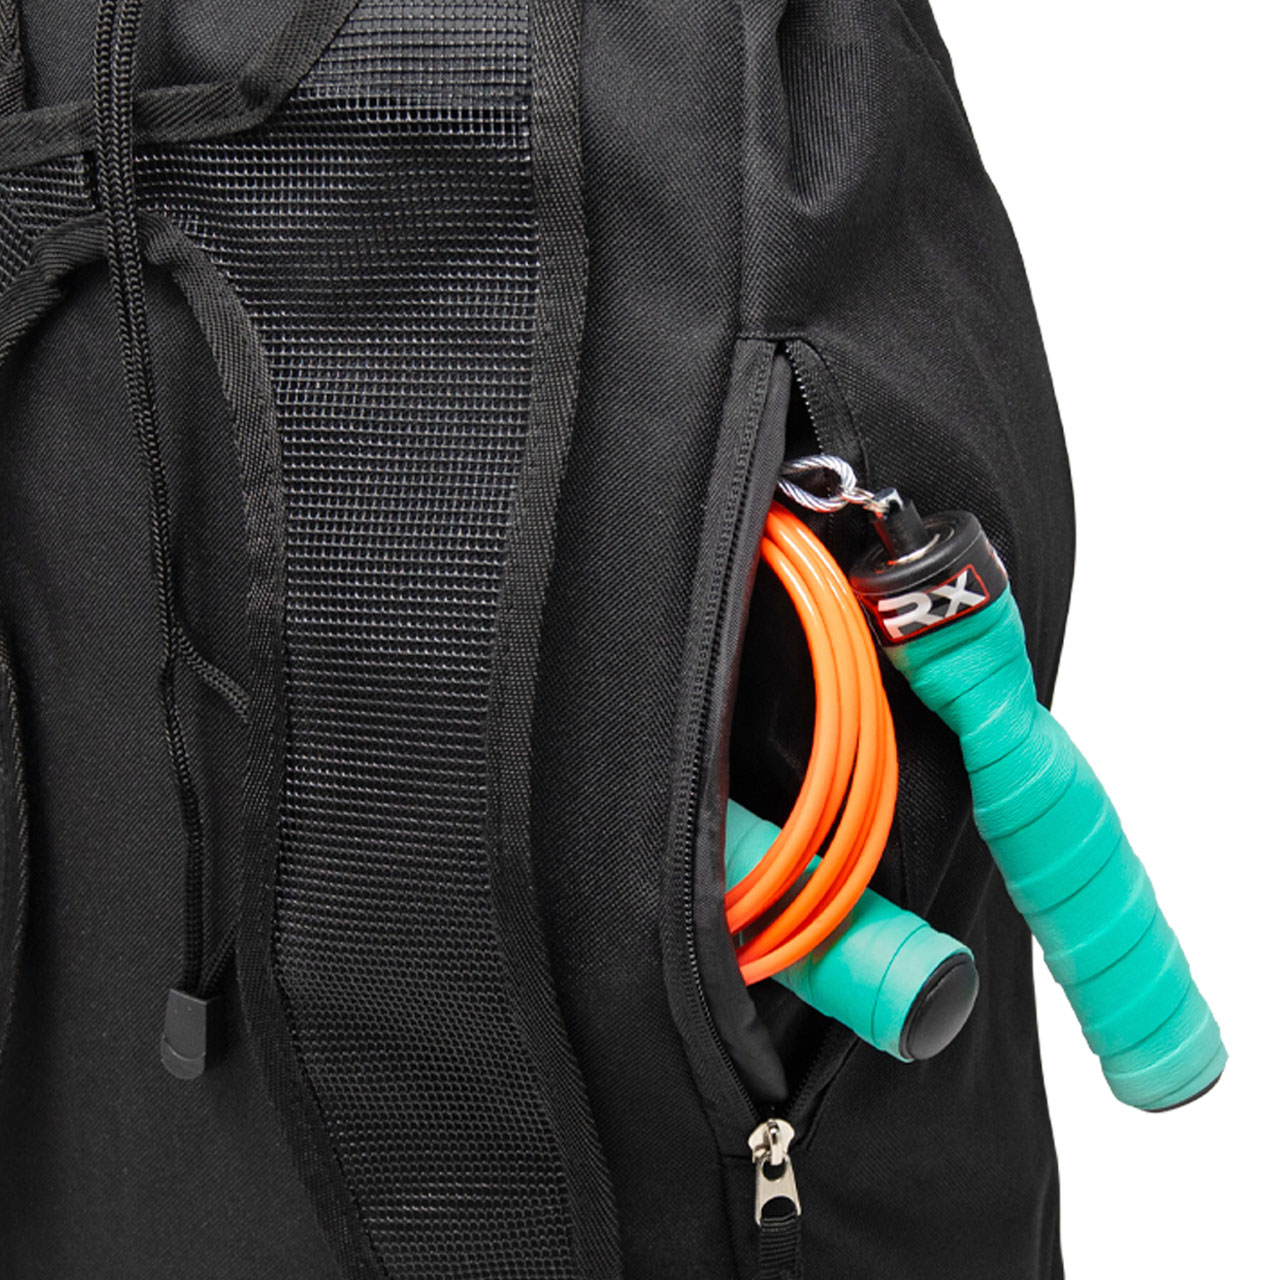 RXSG Drawstring Backpack side bag